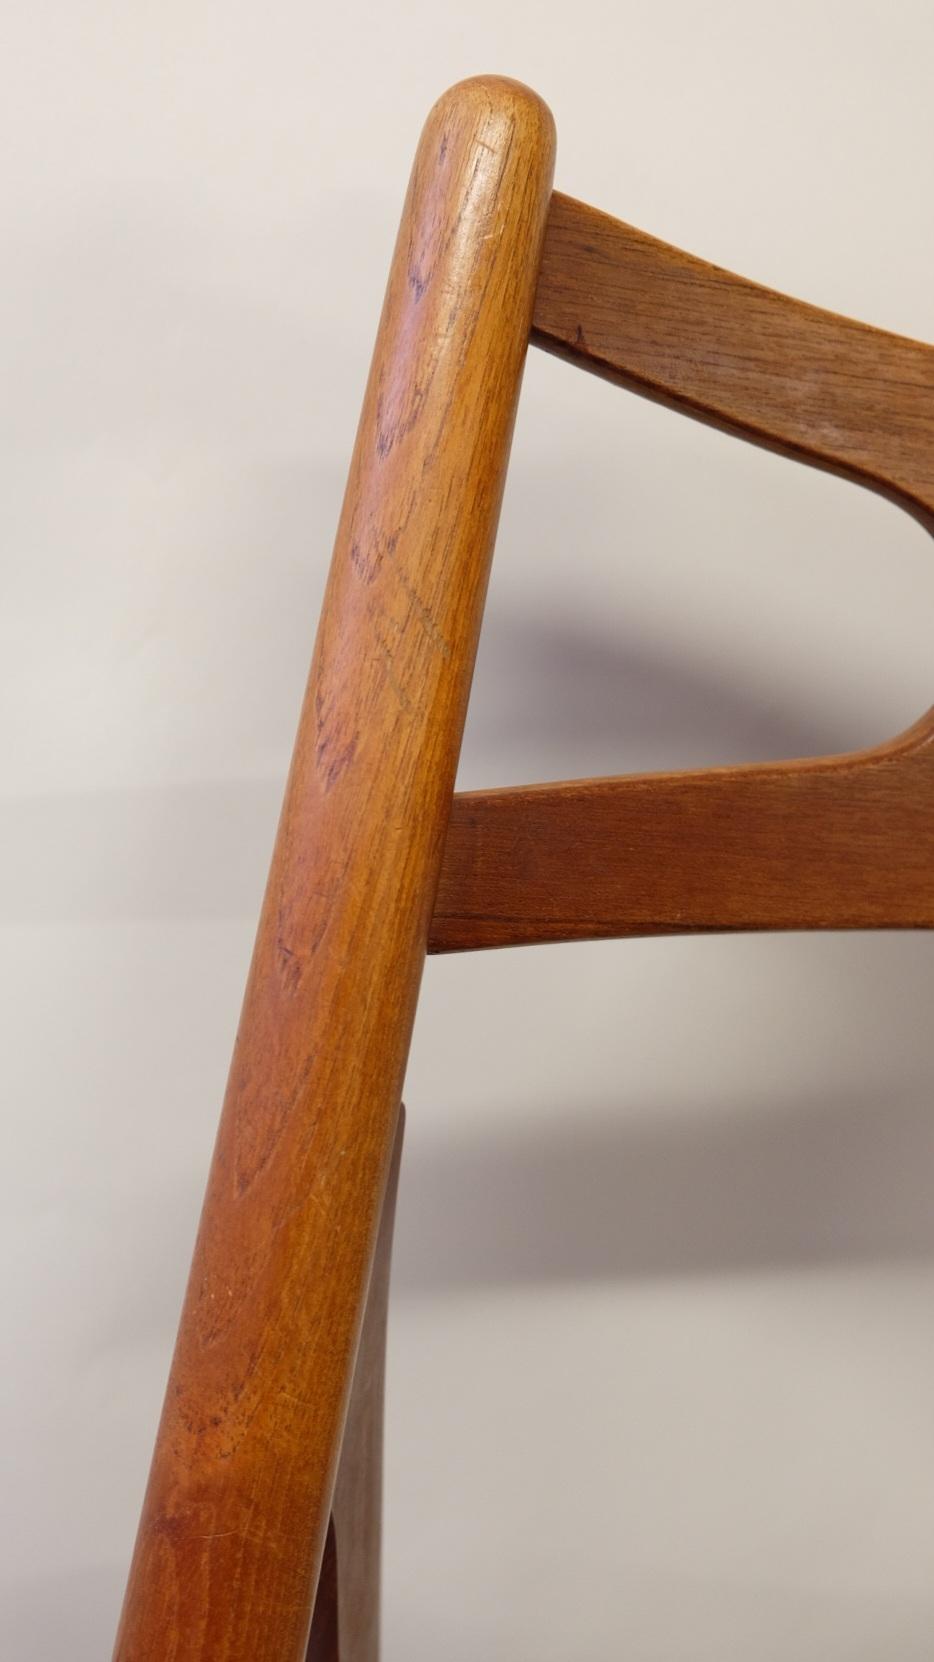 Hans J. Wegner Mid-Century Sawbuck Dining Chair CH29 Teak for Carl Hansen & Son For Sale 7